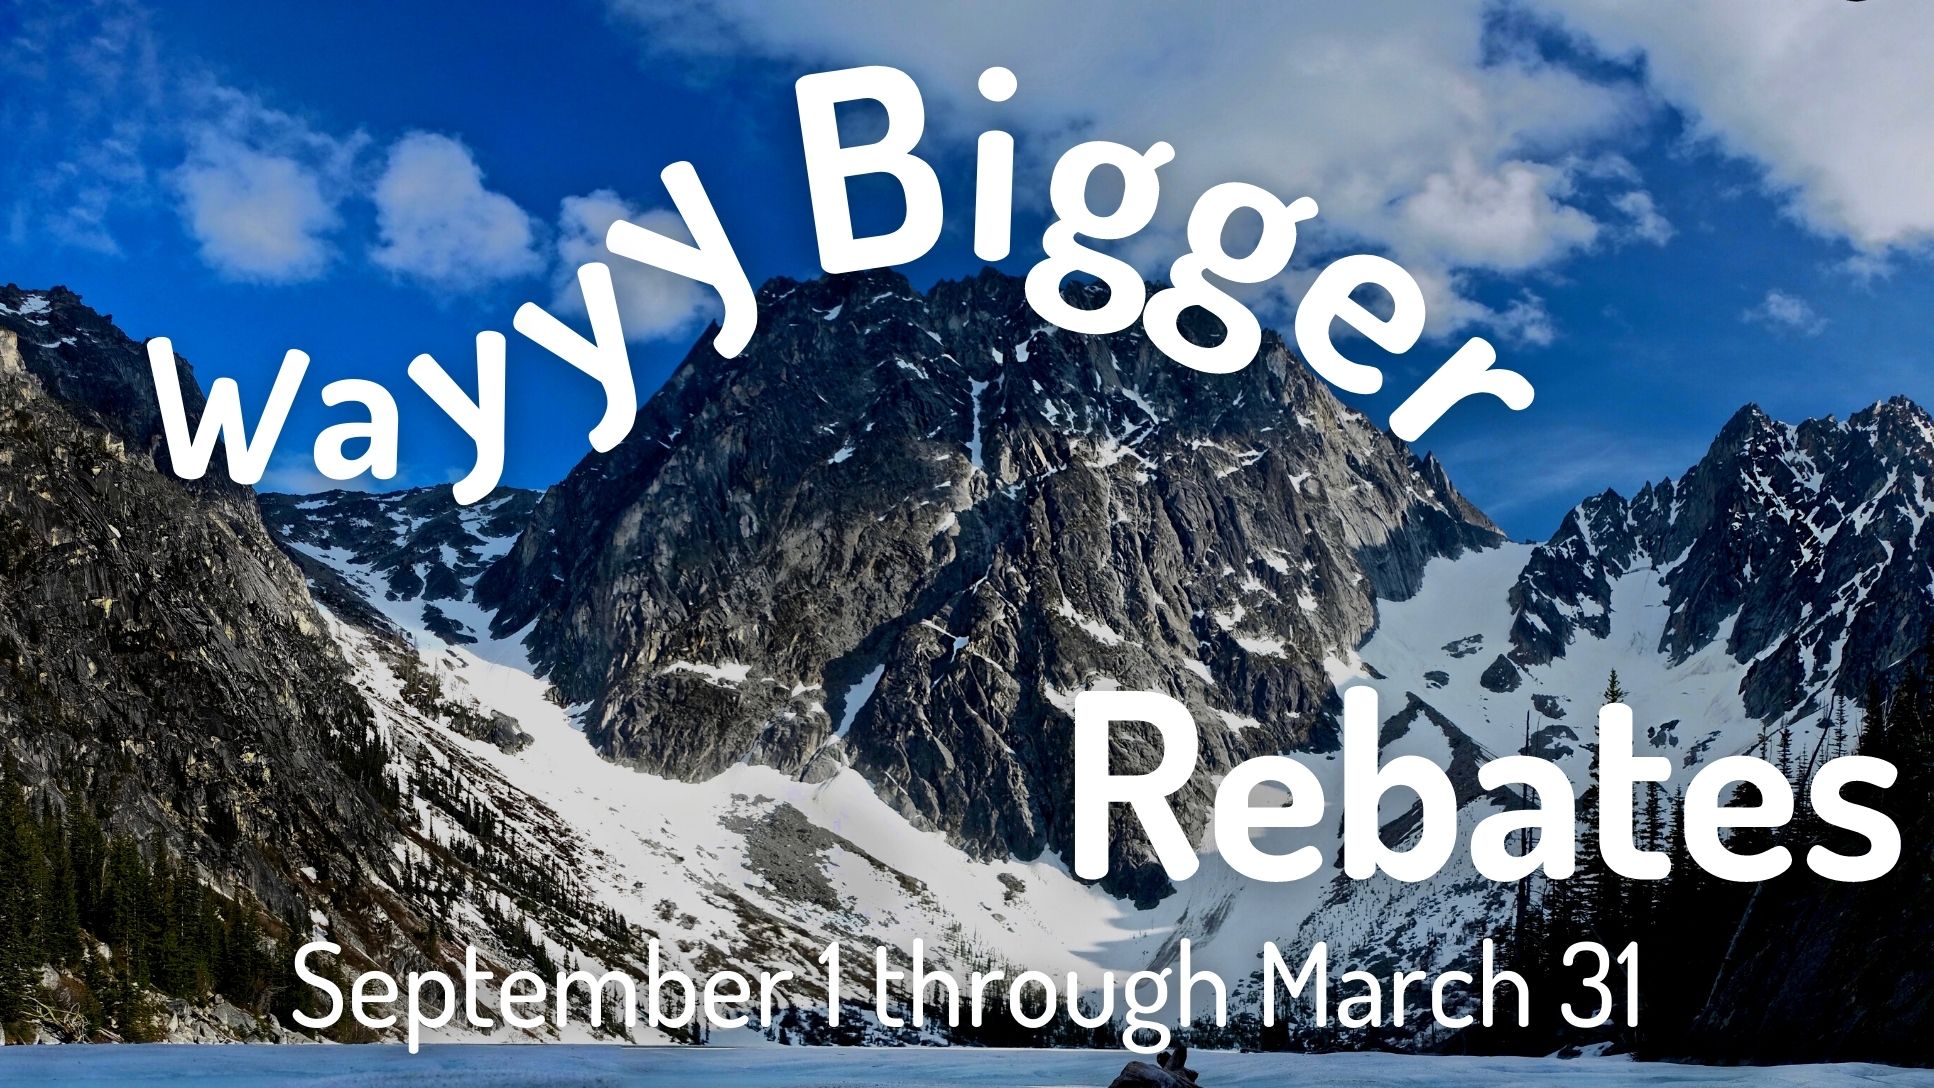 Wayyy Bigger Rebates: September 1 through March 31